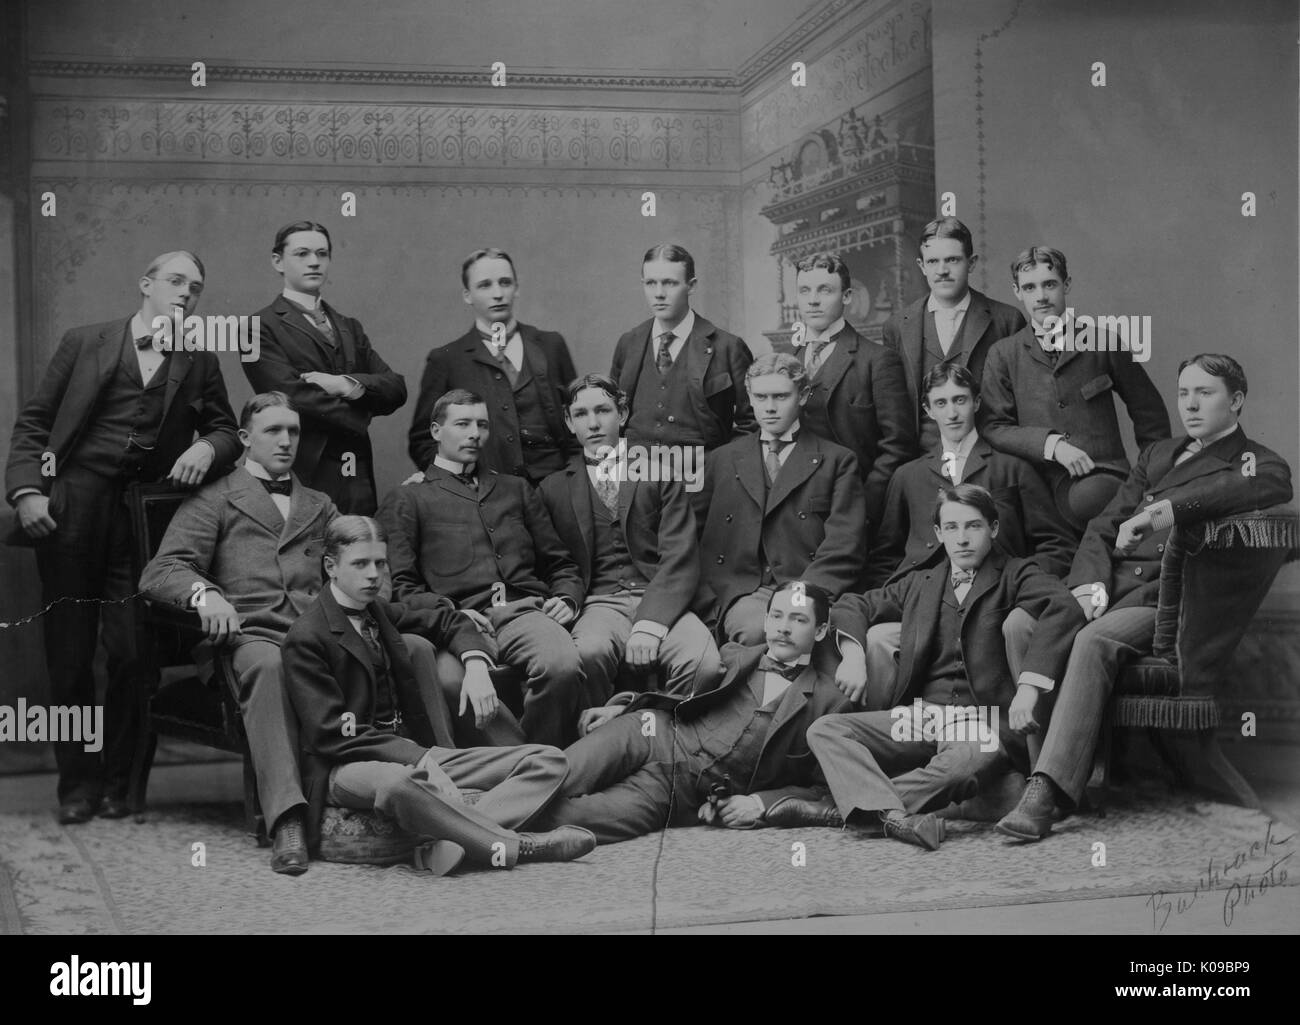 Foto di classe della Johns Hopkins University di classe 1889, gli uomini sono tutti indossano tute, essi sono in posa davanti un murale decorativo, 1889. Foto Stock